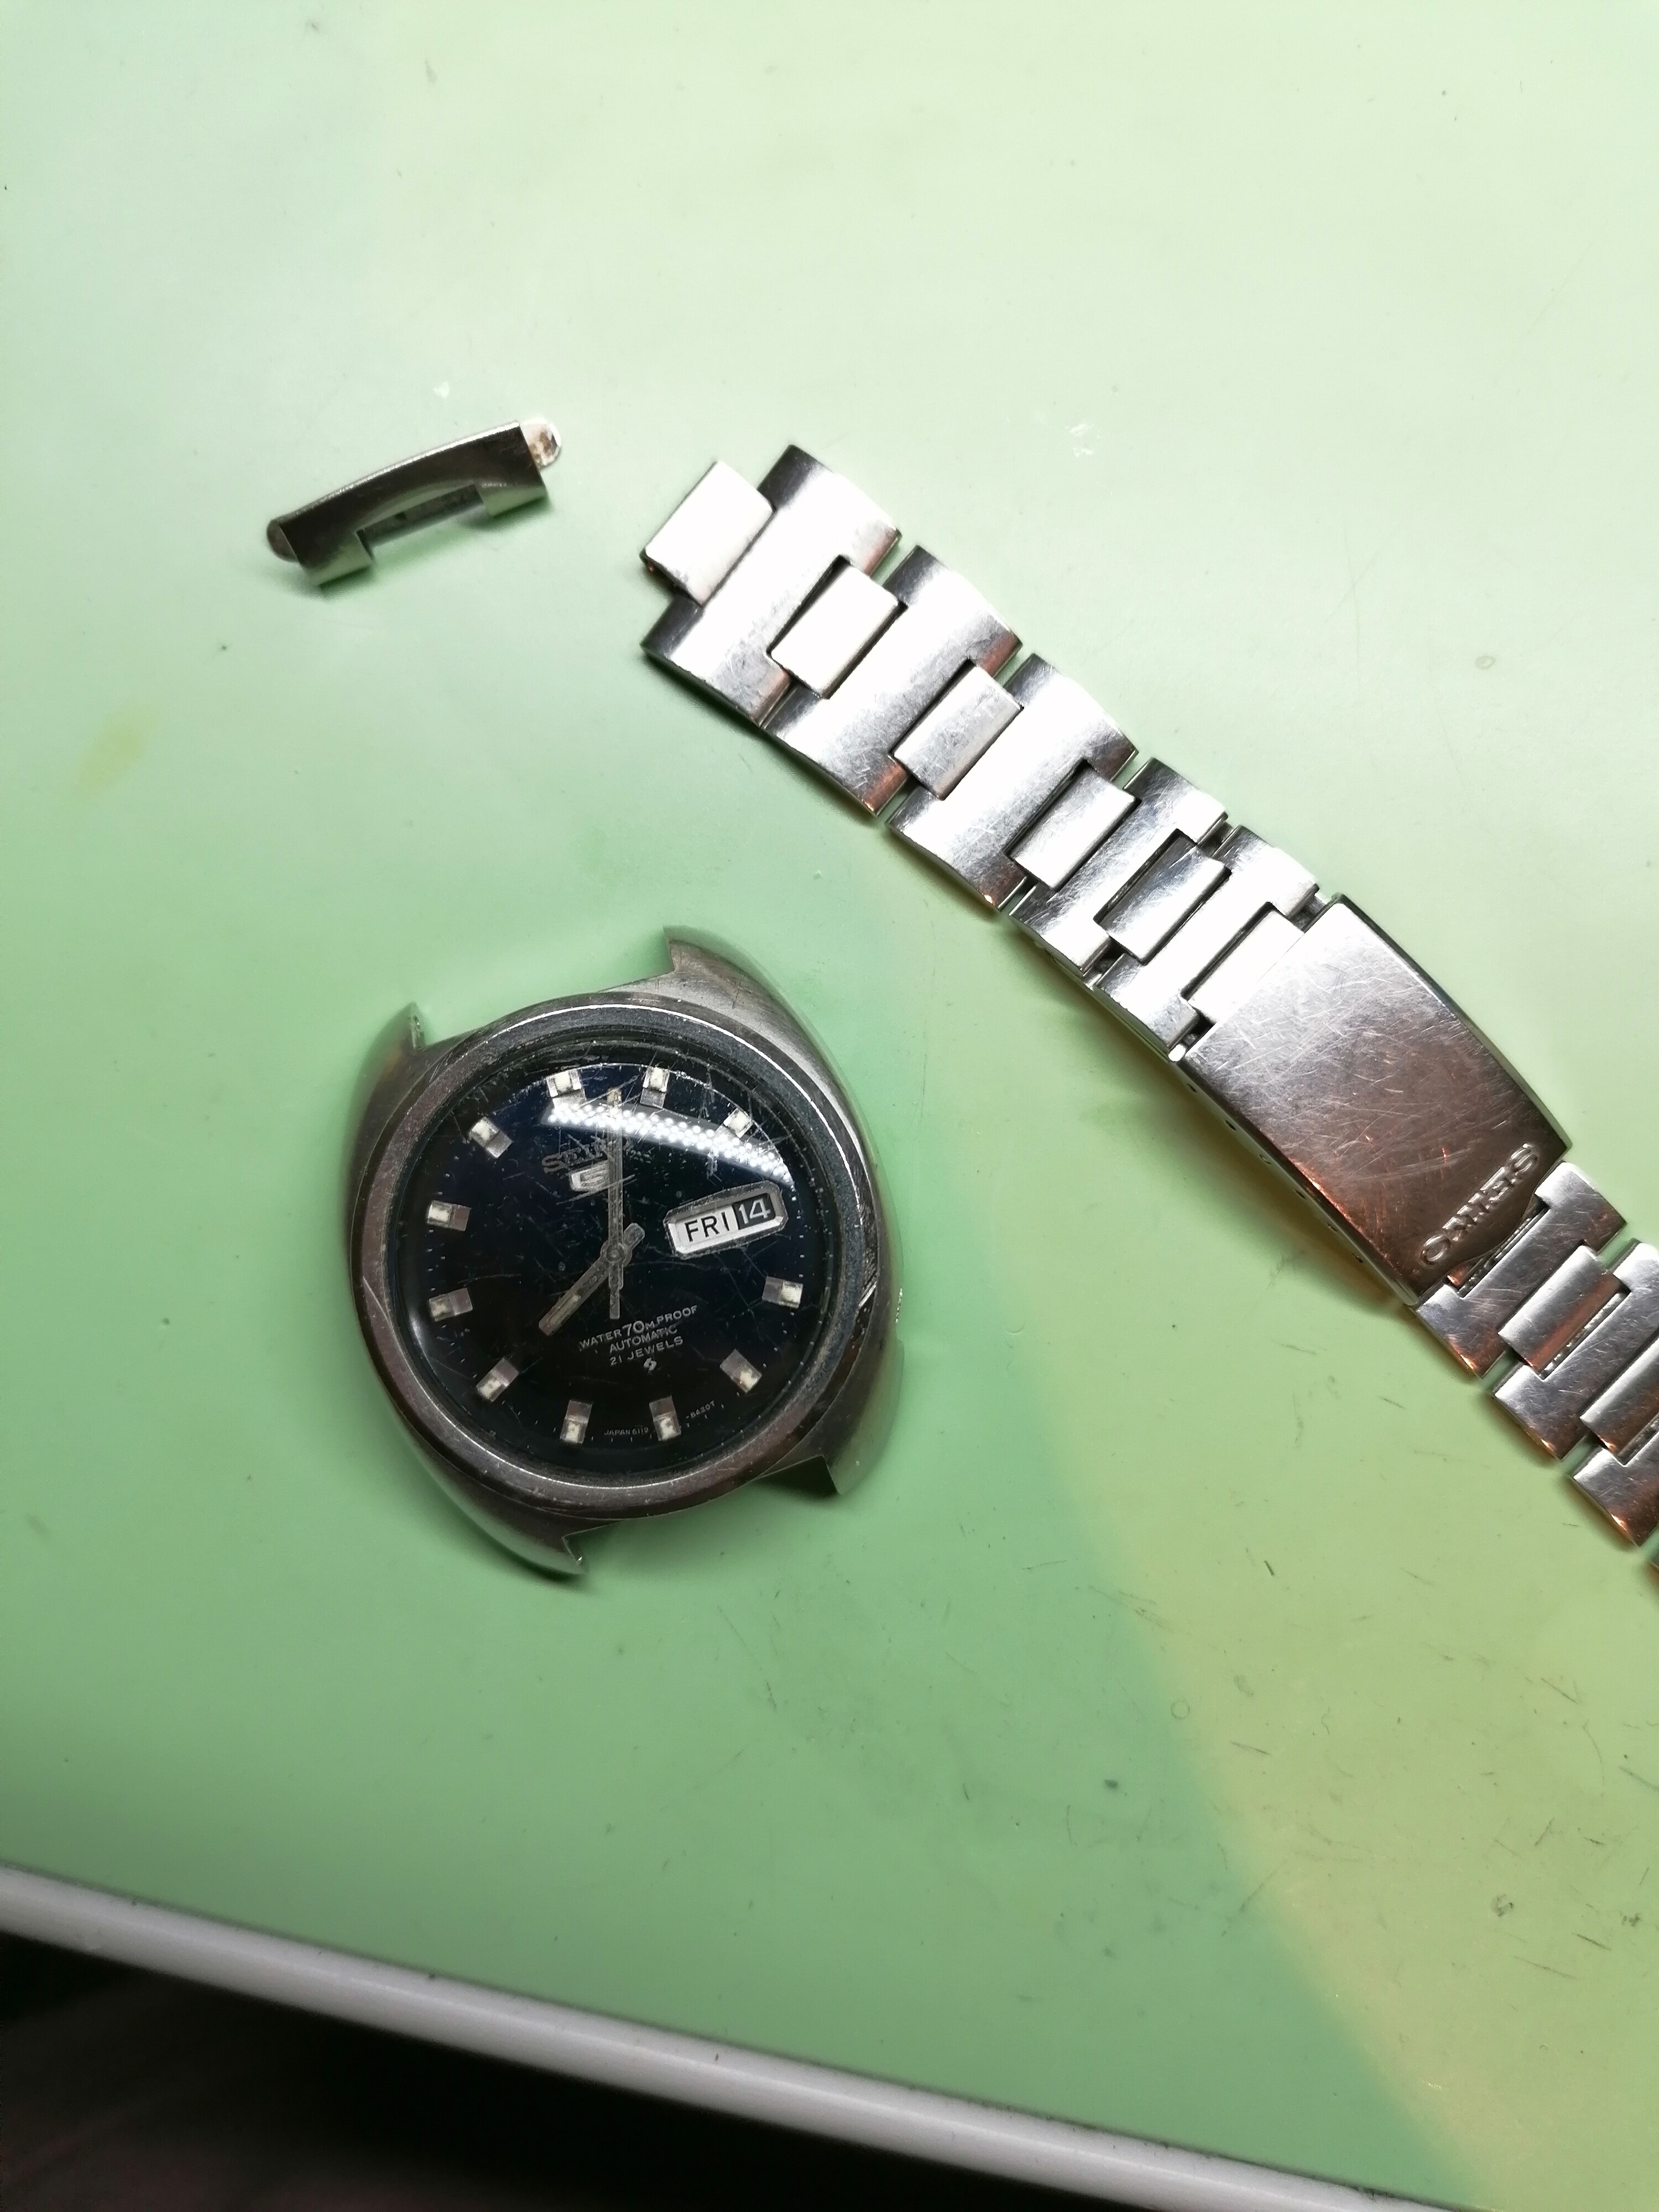 Gezocht end link Seiko 6119-8400 - Horlogemarkt (gezocht)   - het forum voor liefhebbers van horloges